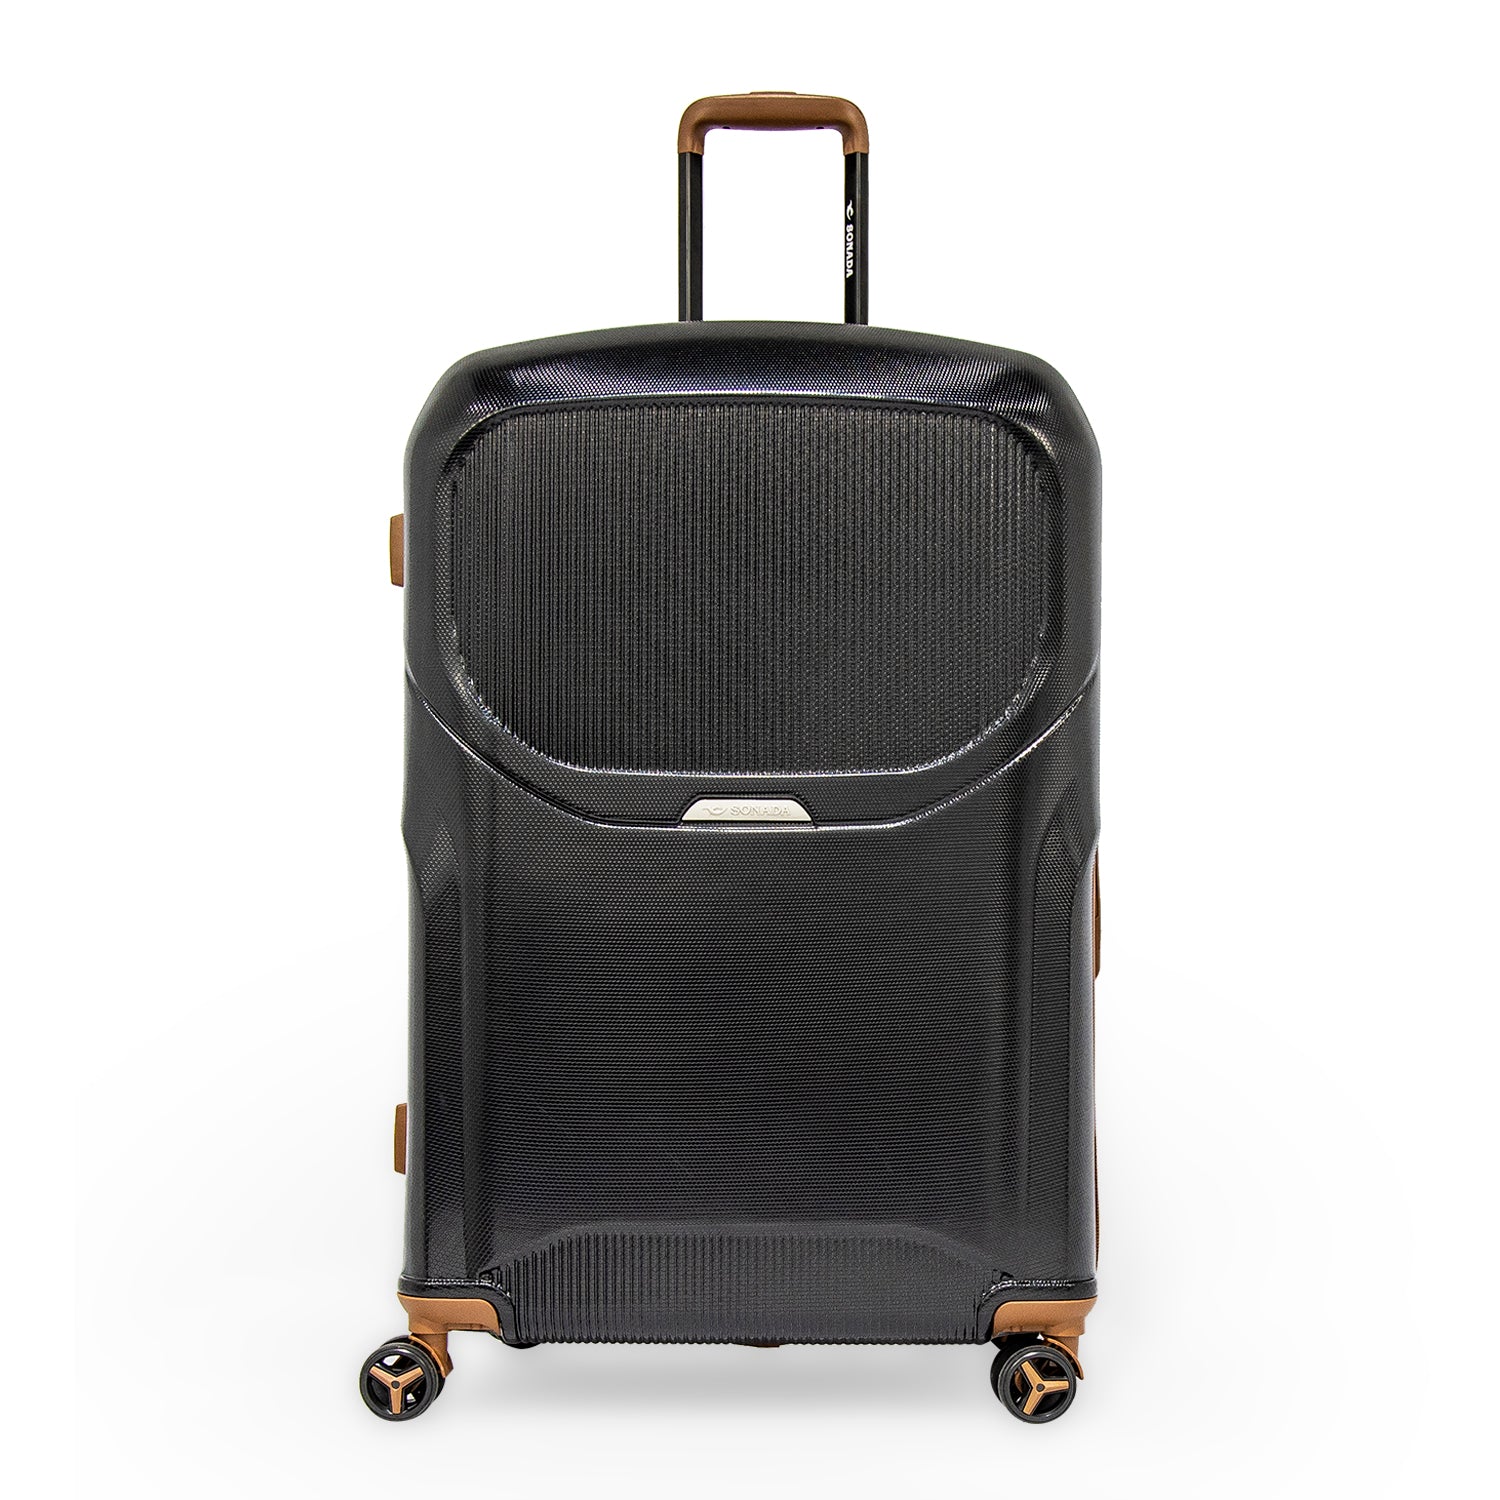 Sonada Upright Luggage Expandable Hardside Suitcase Check In Black ...